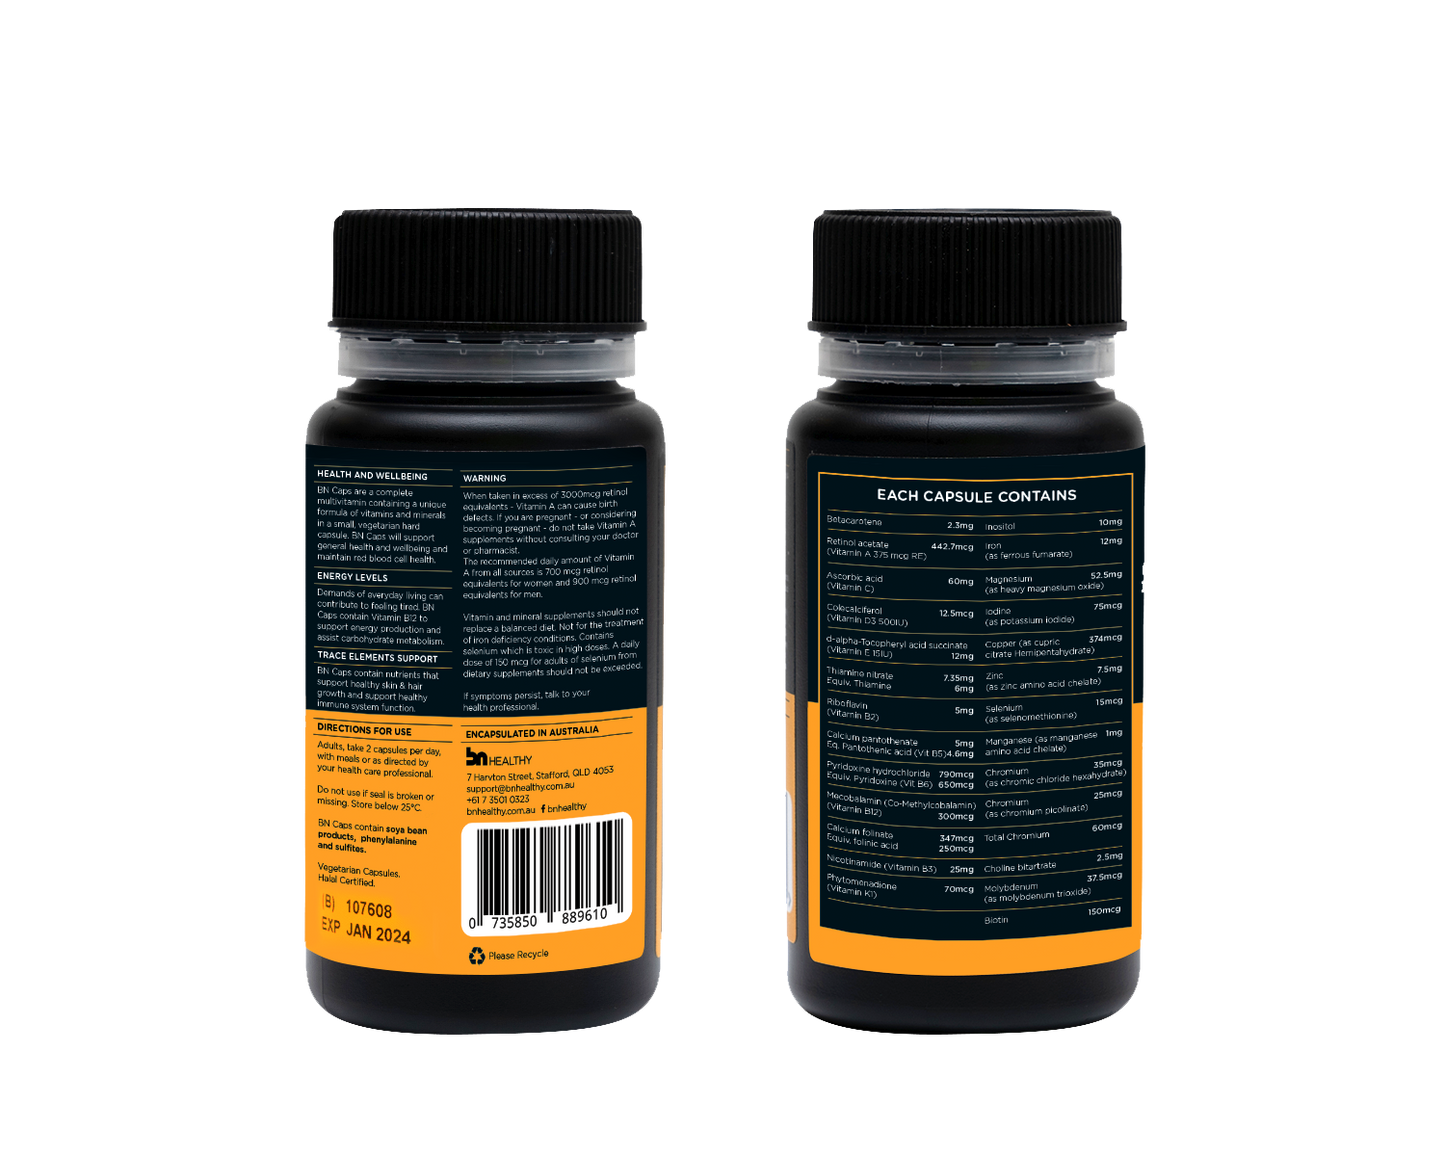 BN Caps - Multivitamin Capsules - 3 Bottles - Save 15%